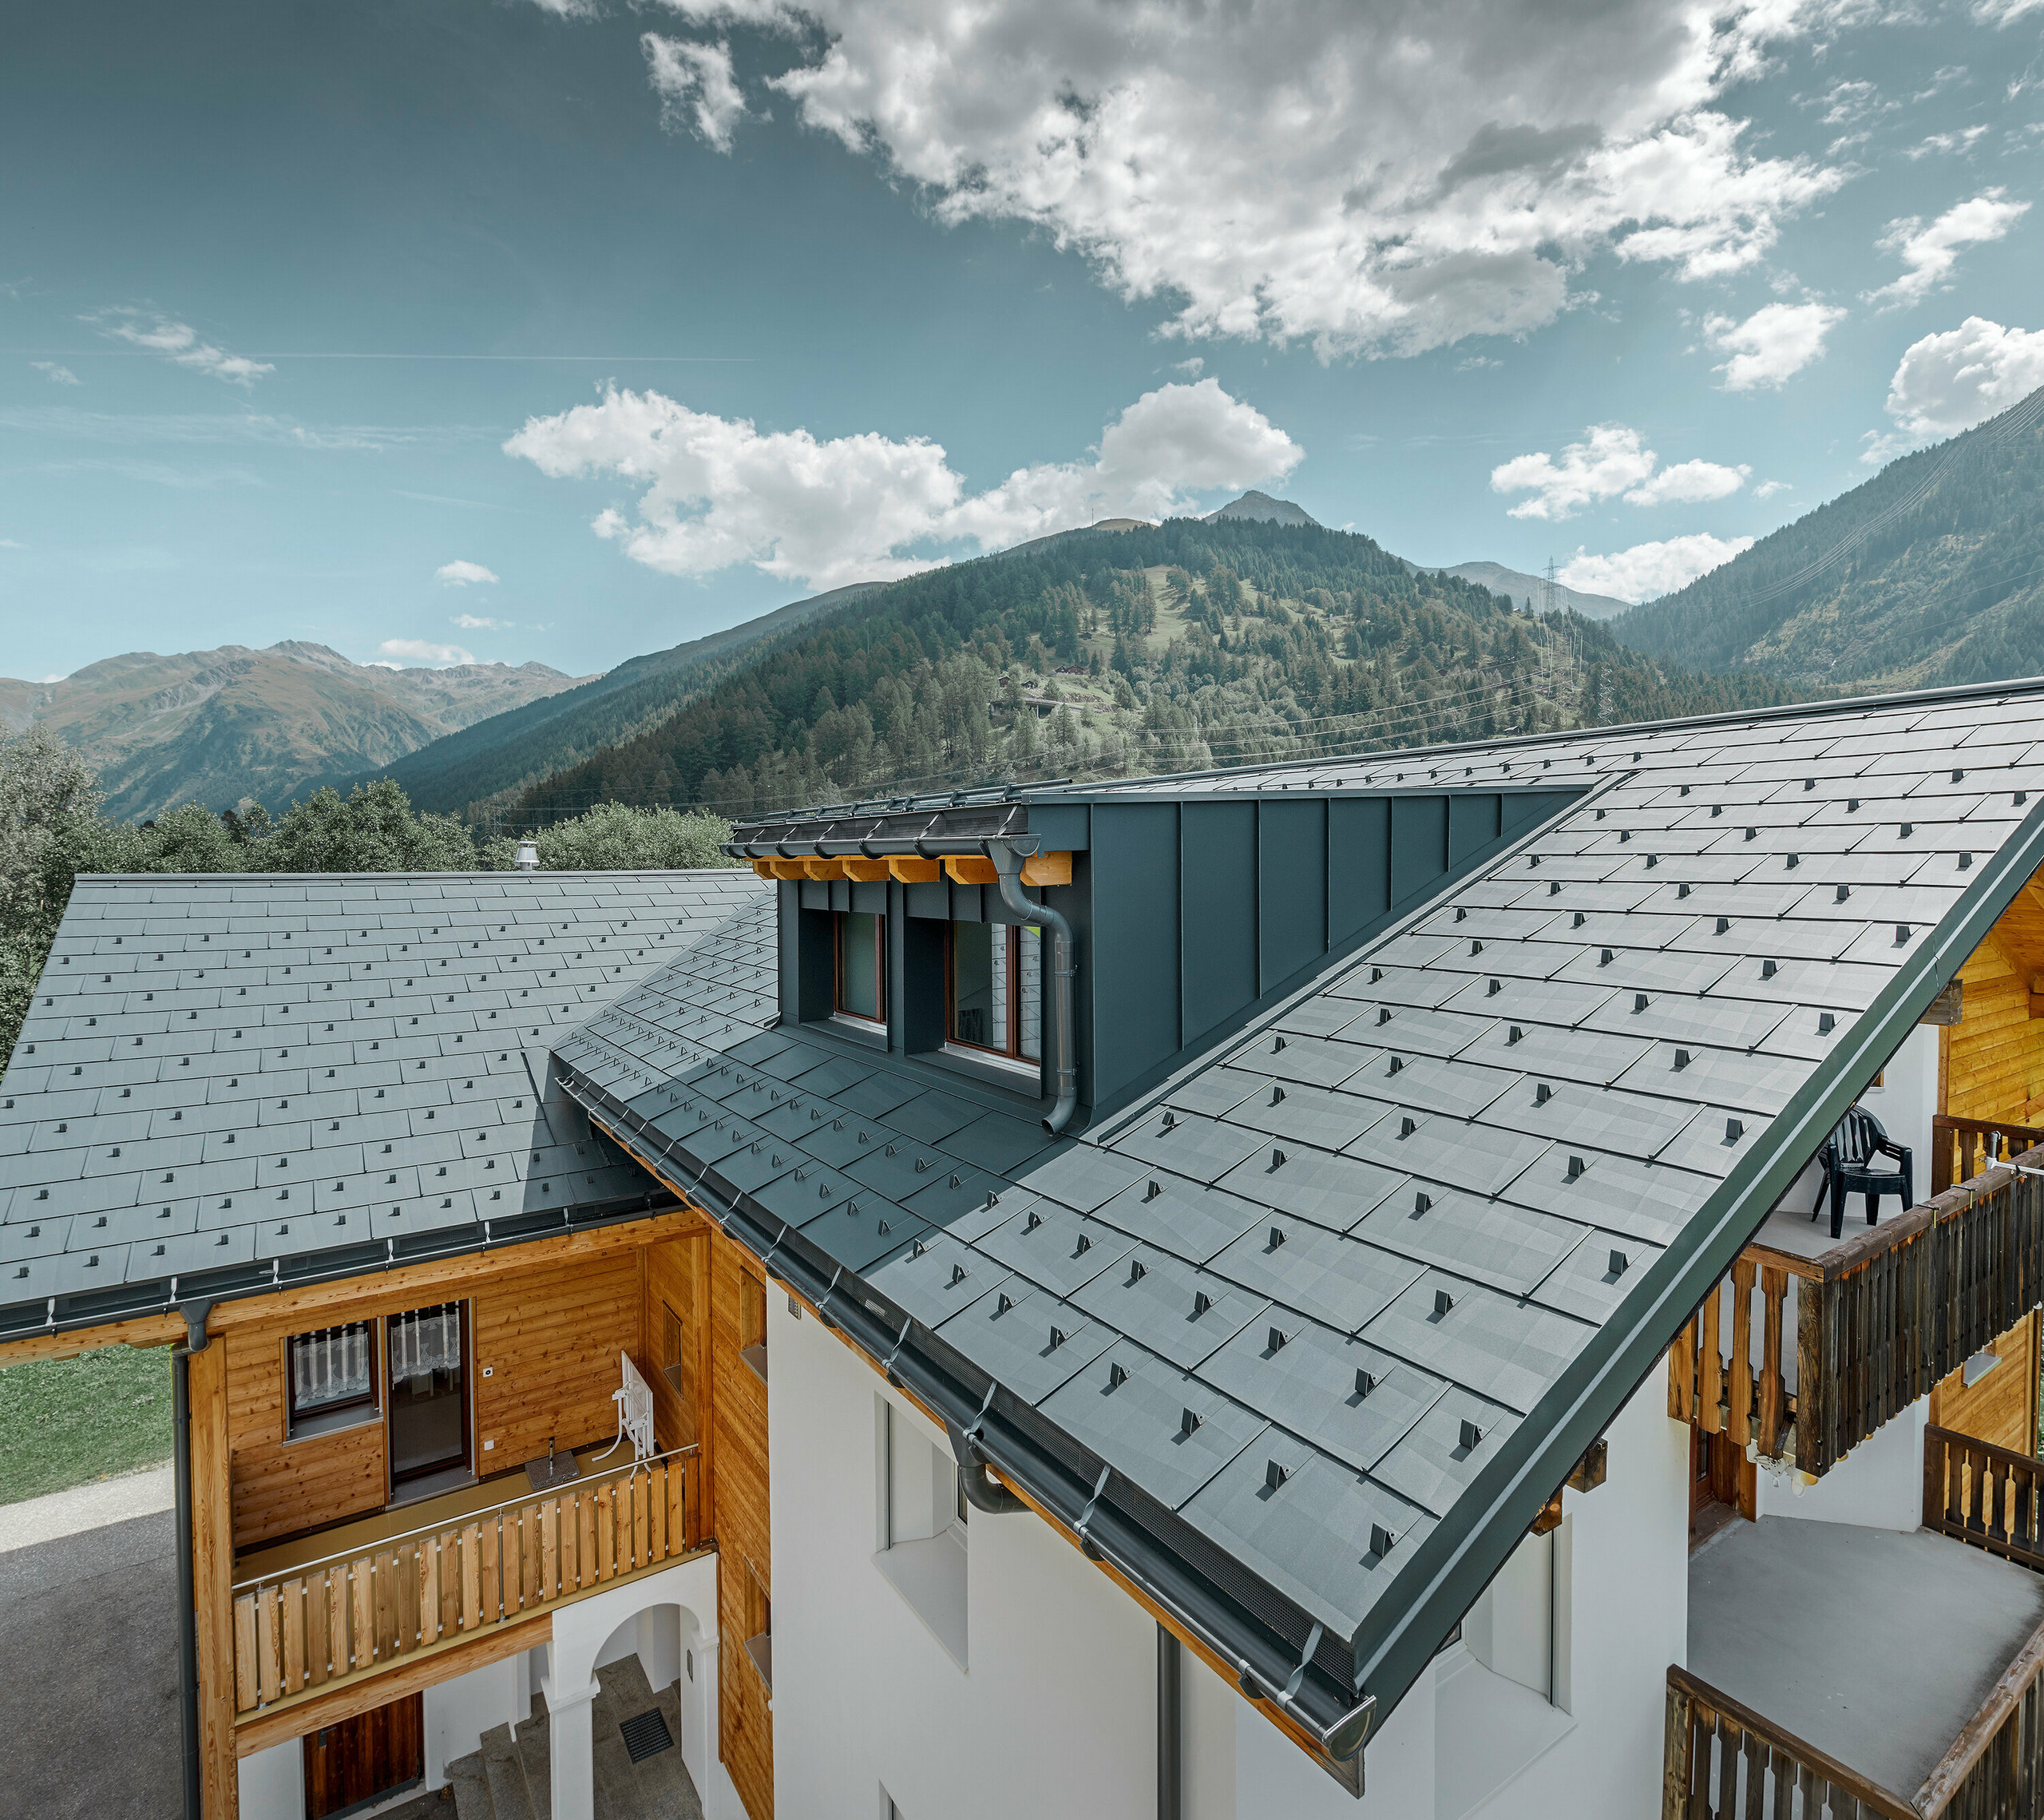 Novo sanirana stambena kuća s dvostrešnim krovom i krovnom kućicom; Sanacija krova provedena je PREFA krovnim panelom FX.12 u antracit boji.